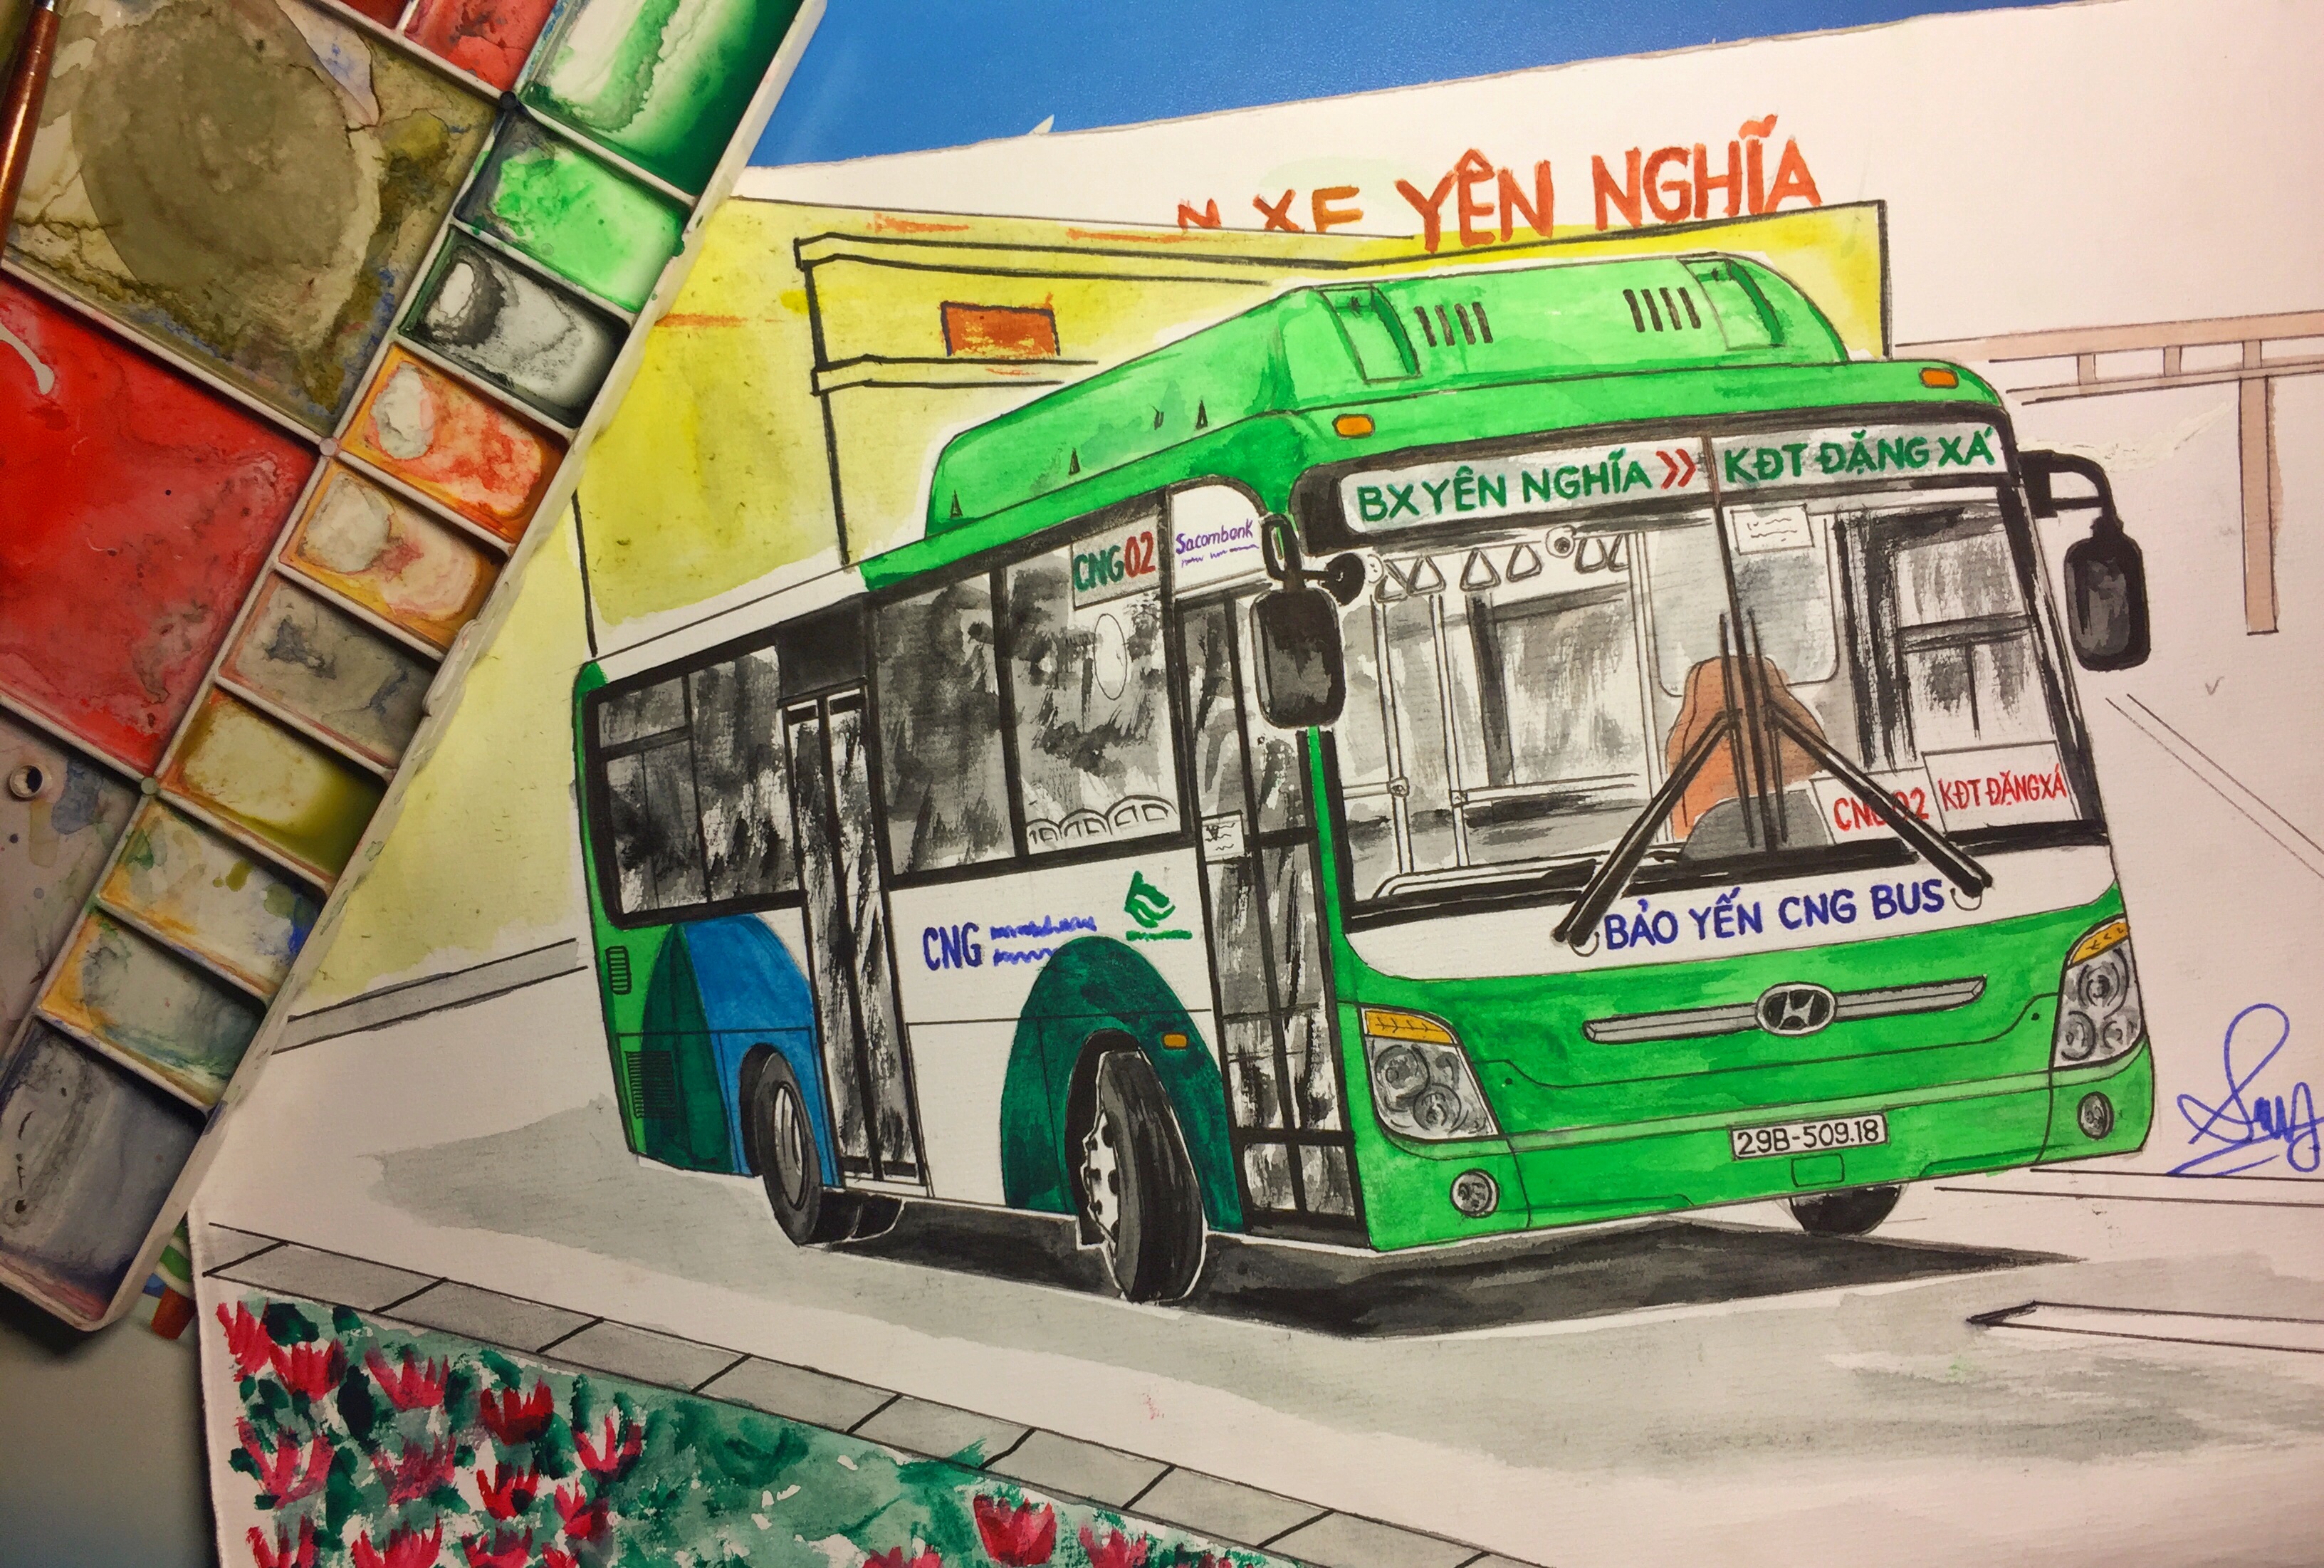 Tranh vẽ xe buýt Hà Nội sẽ khiến bạn cảm thấy thật tự hào về đất nước và con người Việt Nam của mình. Hãy khám phá những hình ảnh đầy nét đặc trưng của xe buýt kết hợp với kiến trúc phố cổ, mang đến cho bạn một trải nghiệm độc đáo.